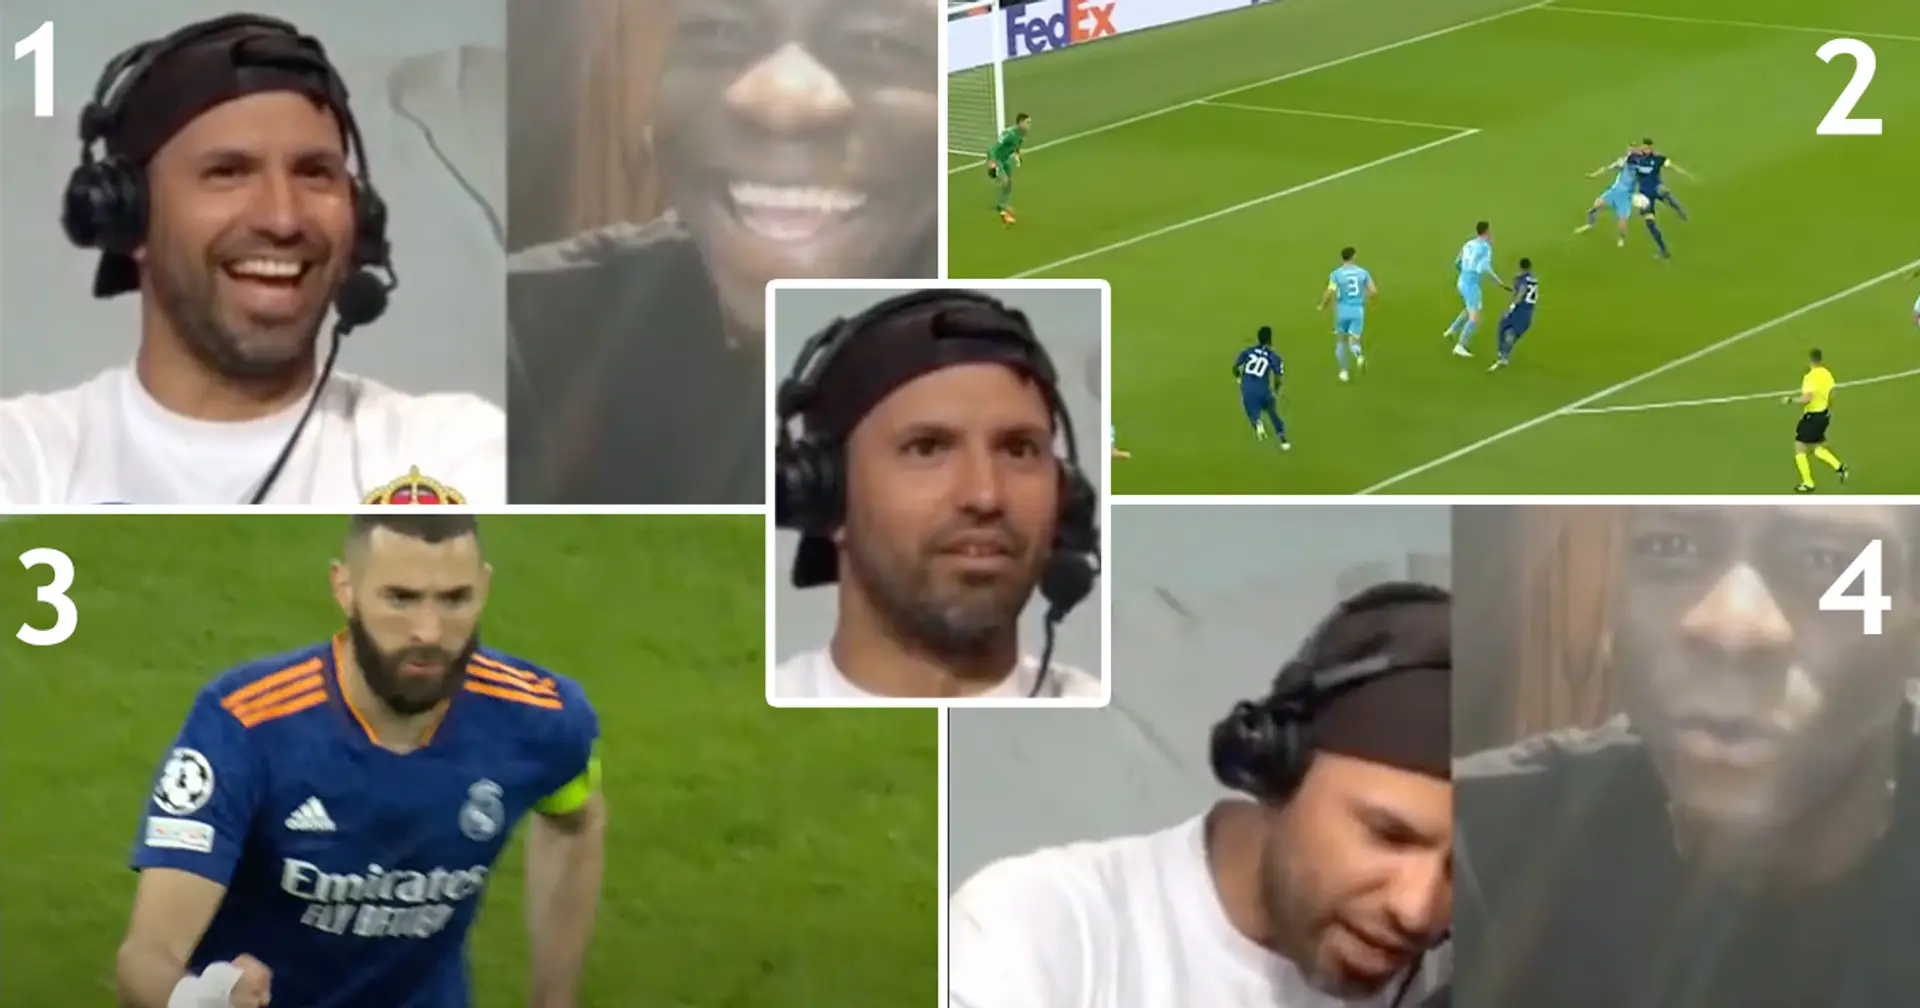 ''Bât***. Il a trop confiance en lui'': la réaction d'Aguero aux deux buts de Benzema contre Man City devient virale